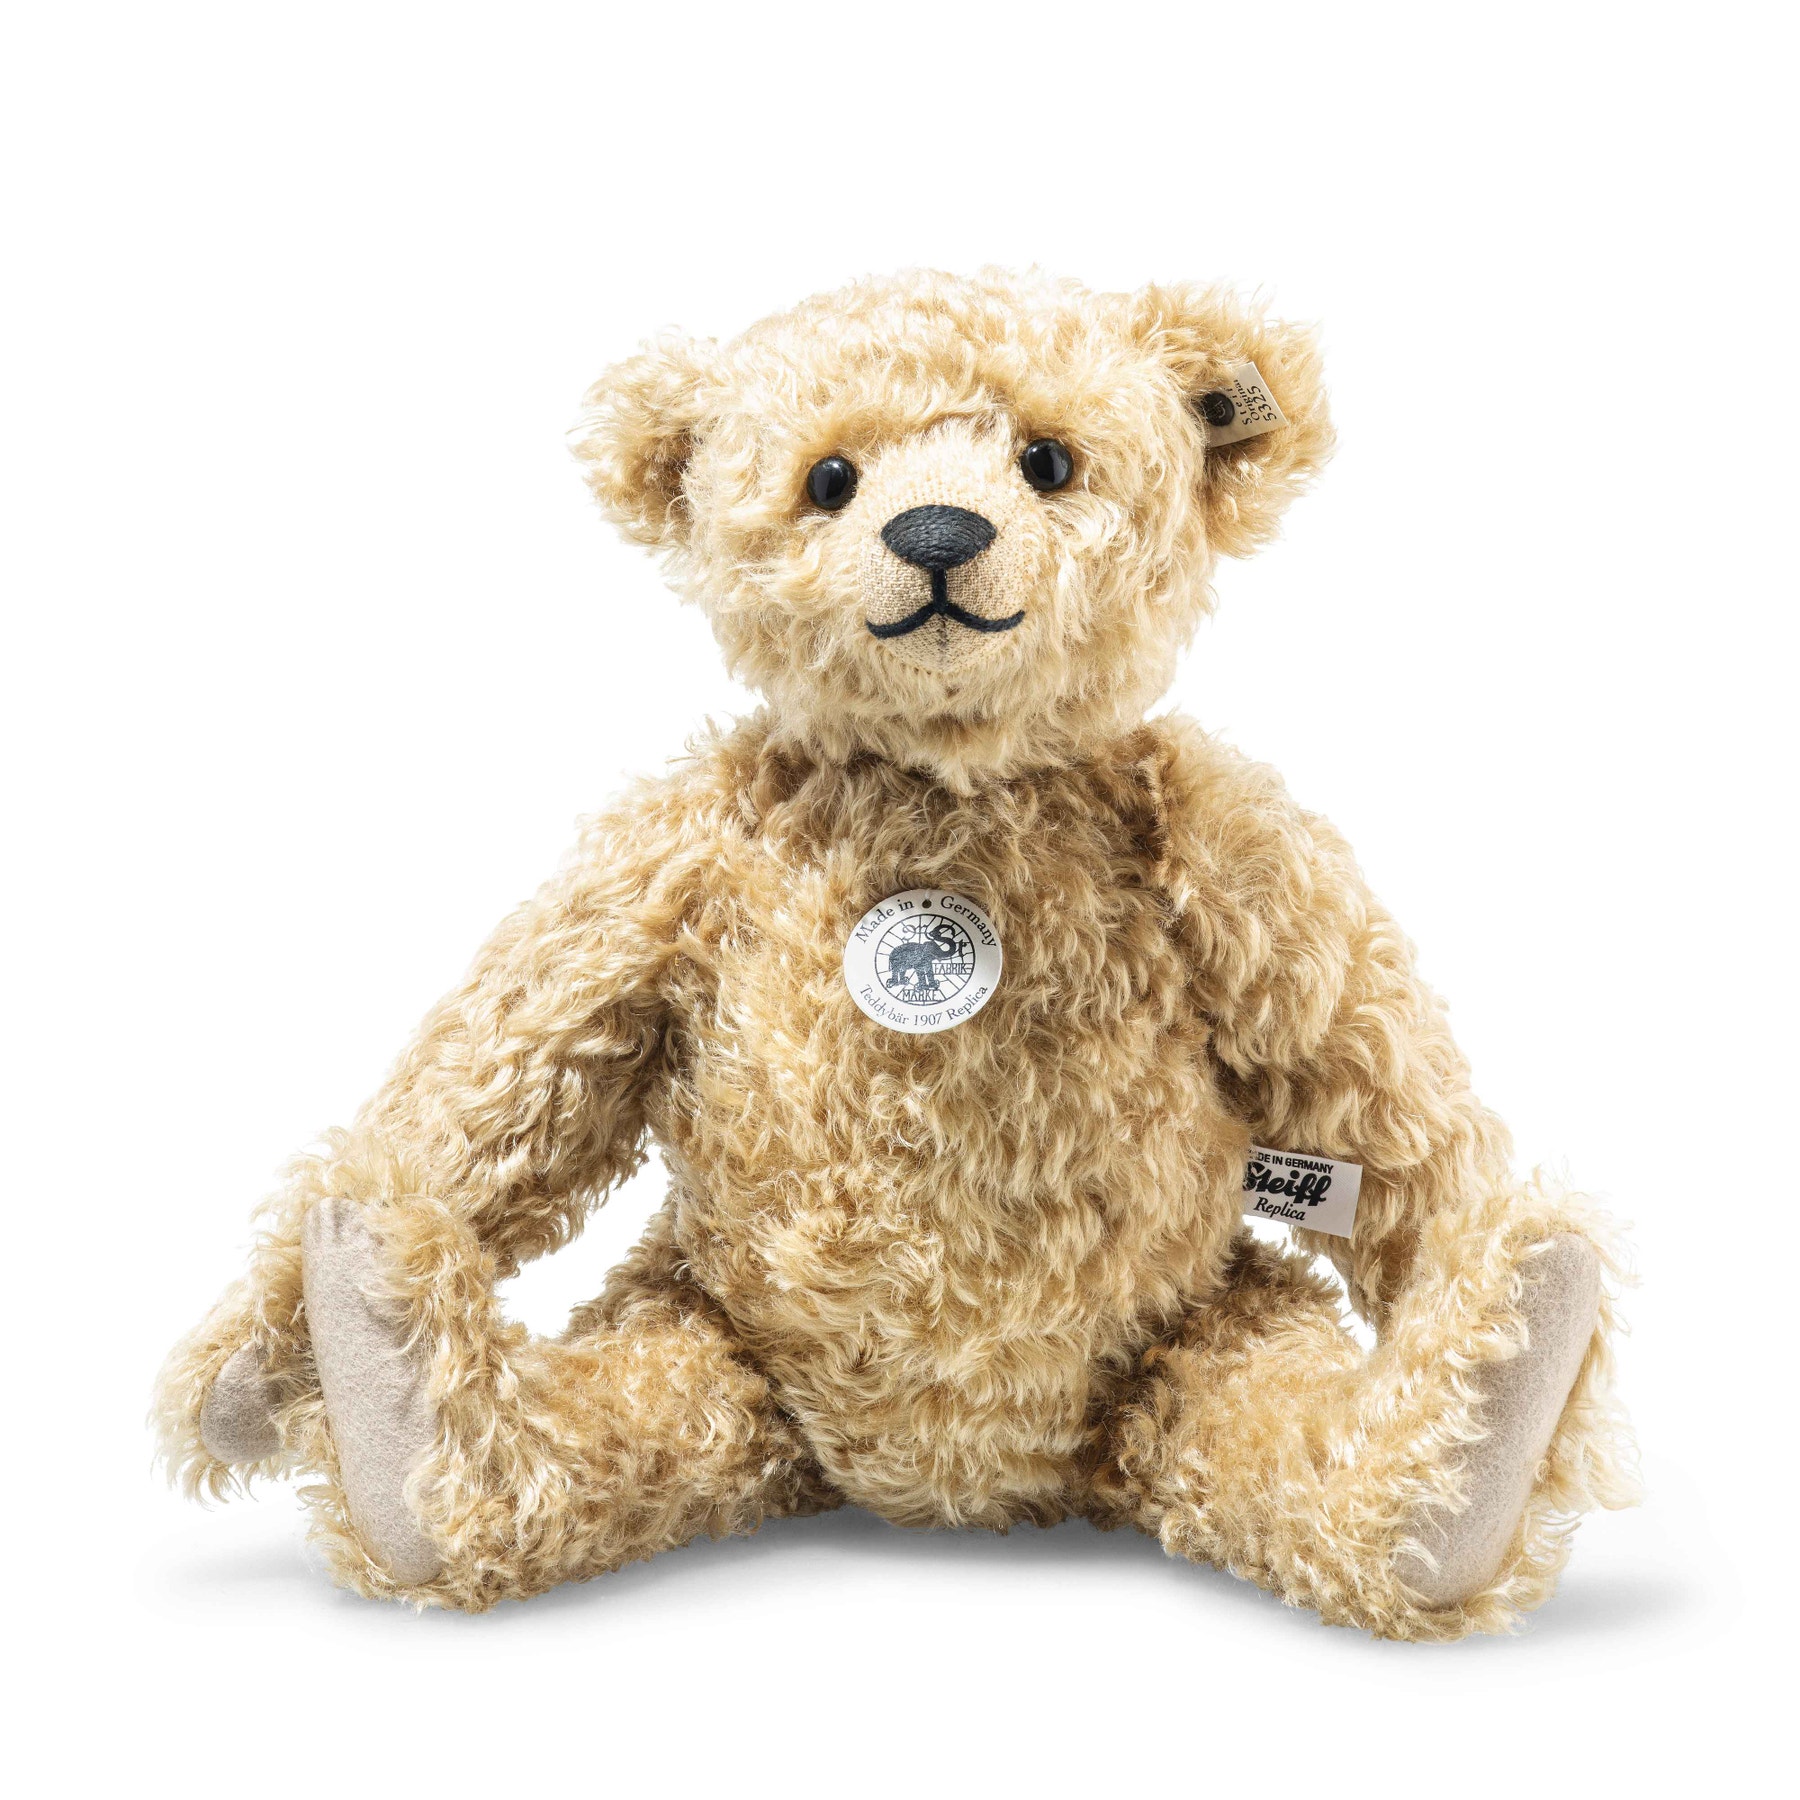 Steiff limited edition teddy bears